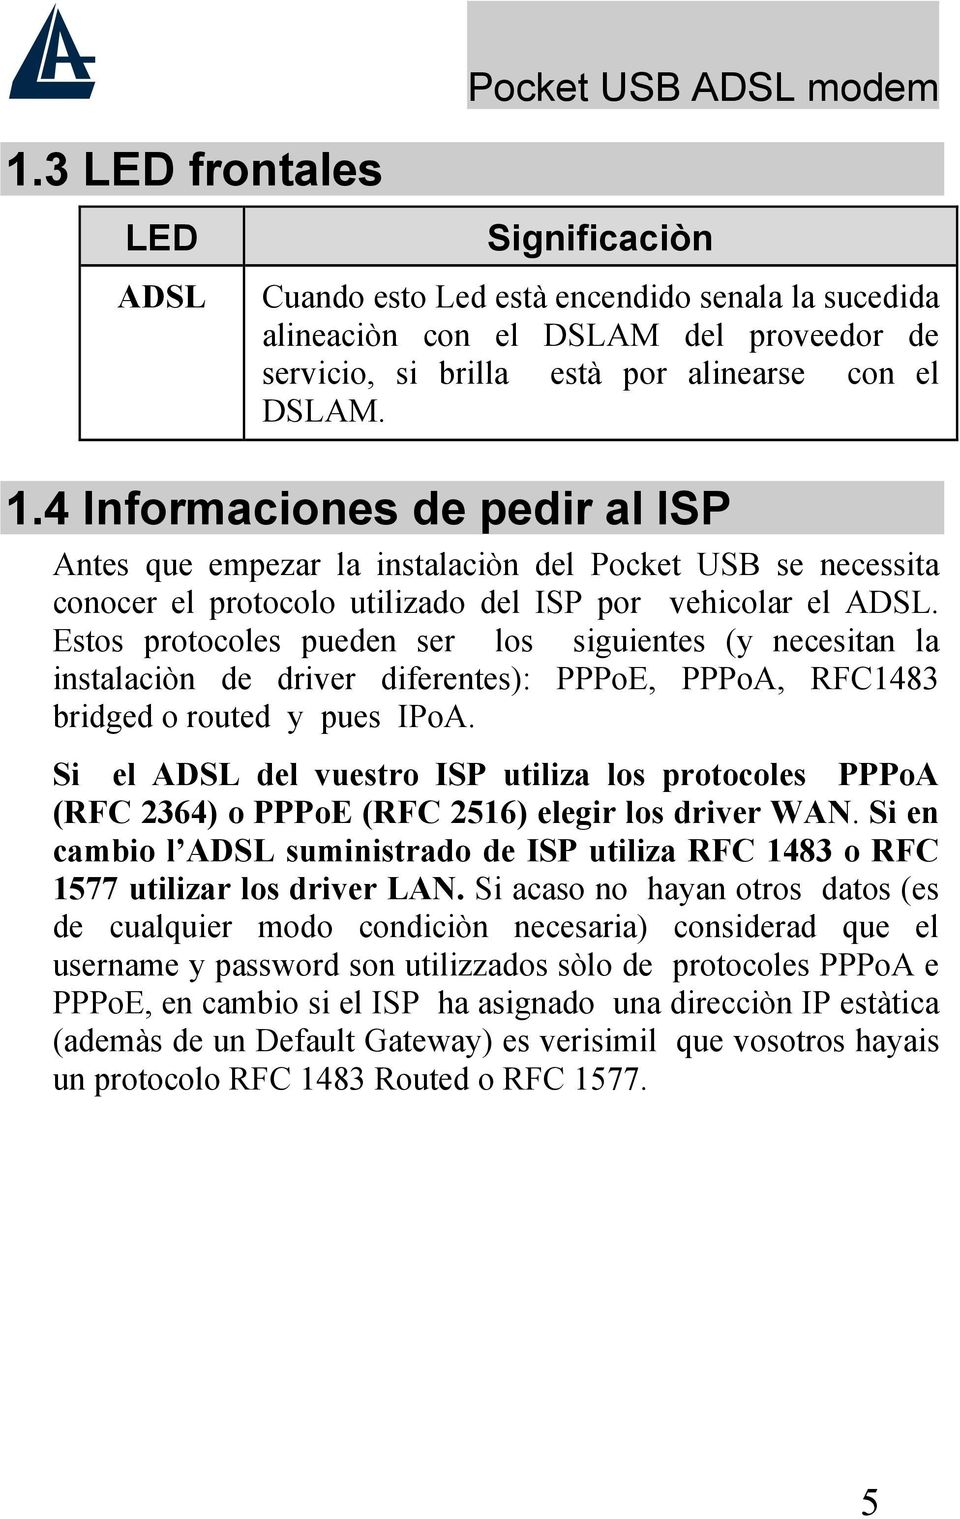 Estos protocoles pueden ser los siguientes (y necesitan la instalaciòn de driver diferentes): PPPoE, PPPoA, RFC1483 bridged o routed y pues IPoA.